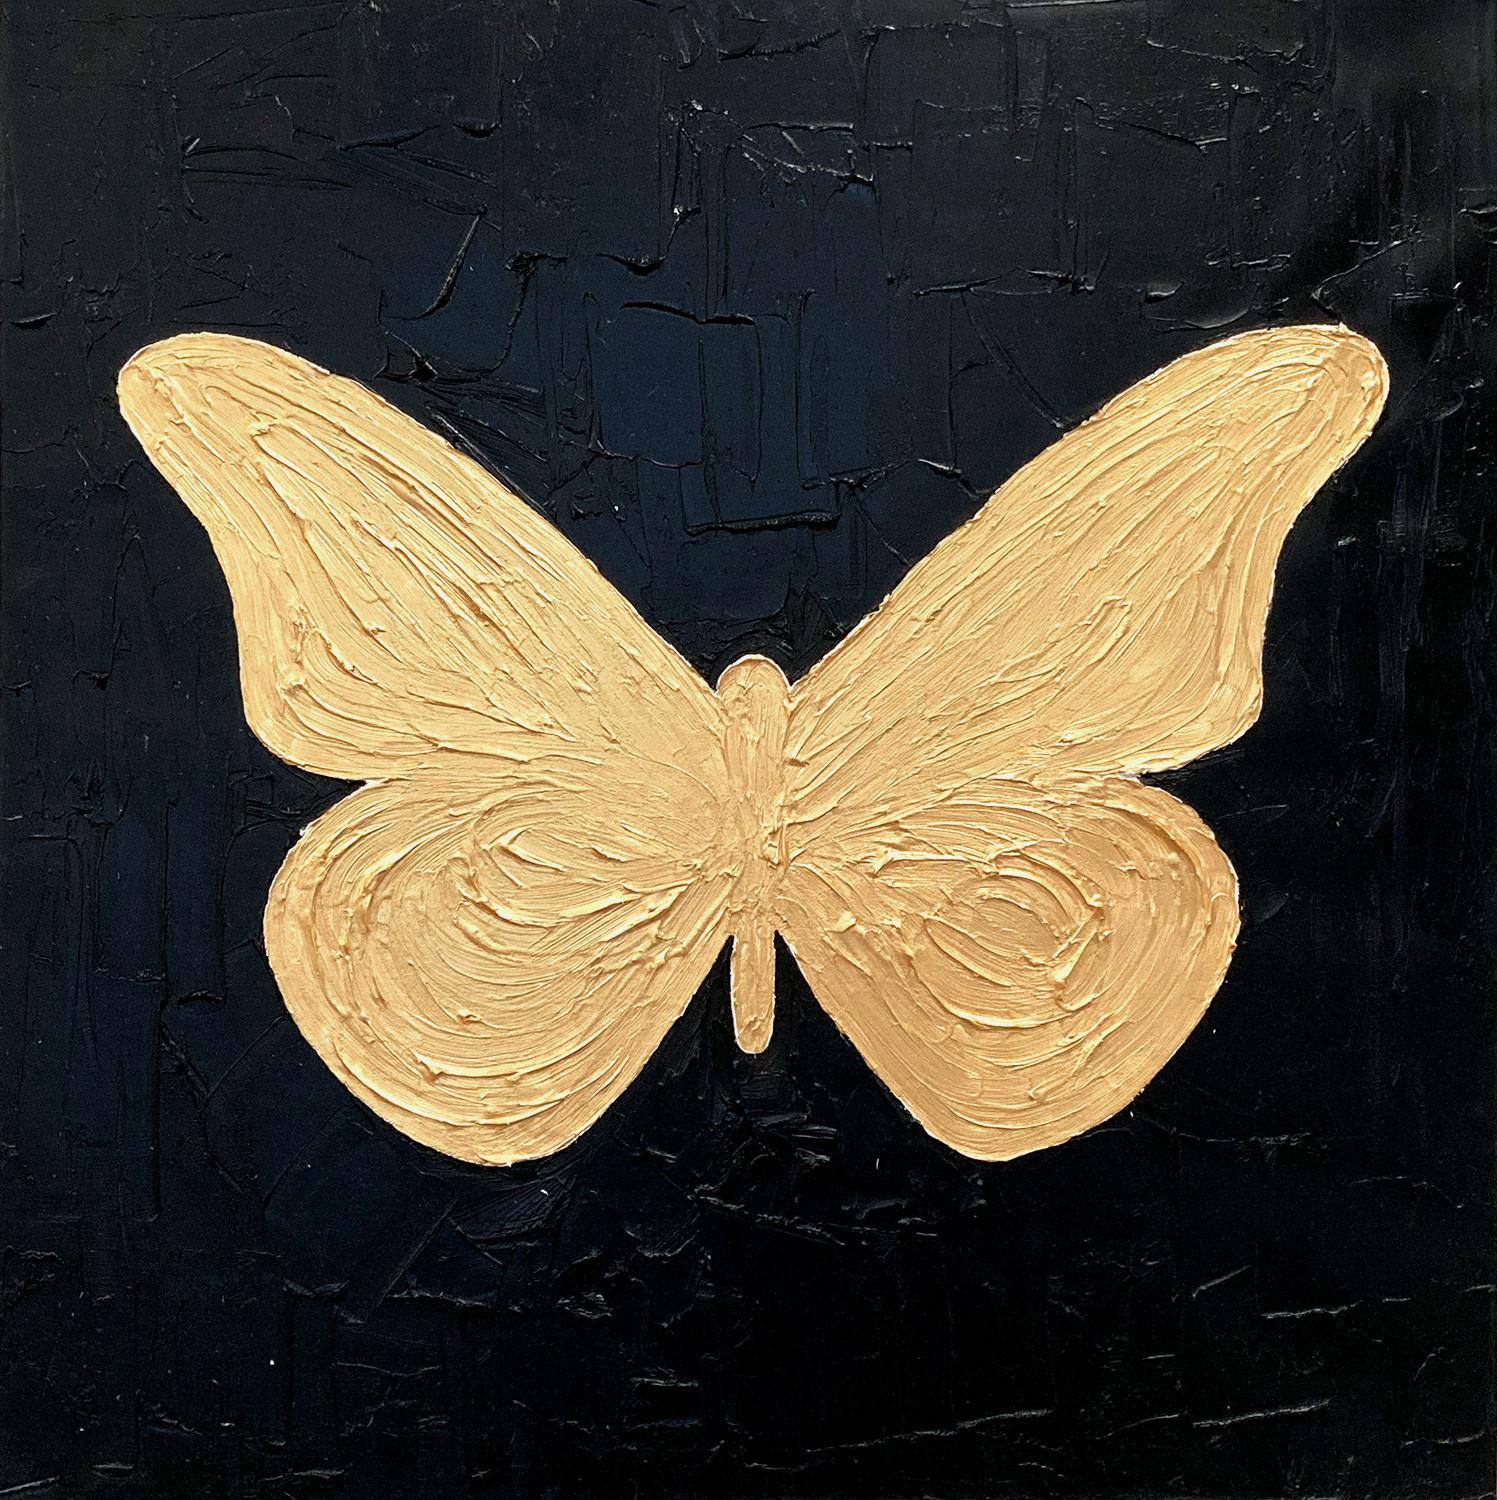 Zeitgenössisches Ölgemälde auf Leinwand ""Mein goldener Schmetterling" in Gold und Schwarz